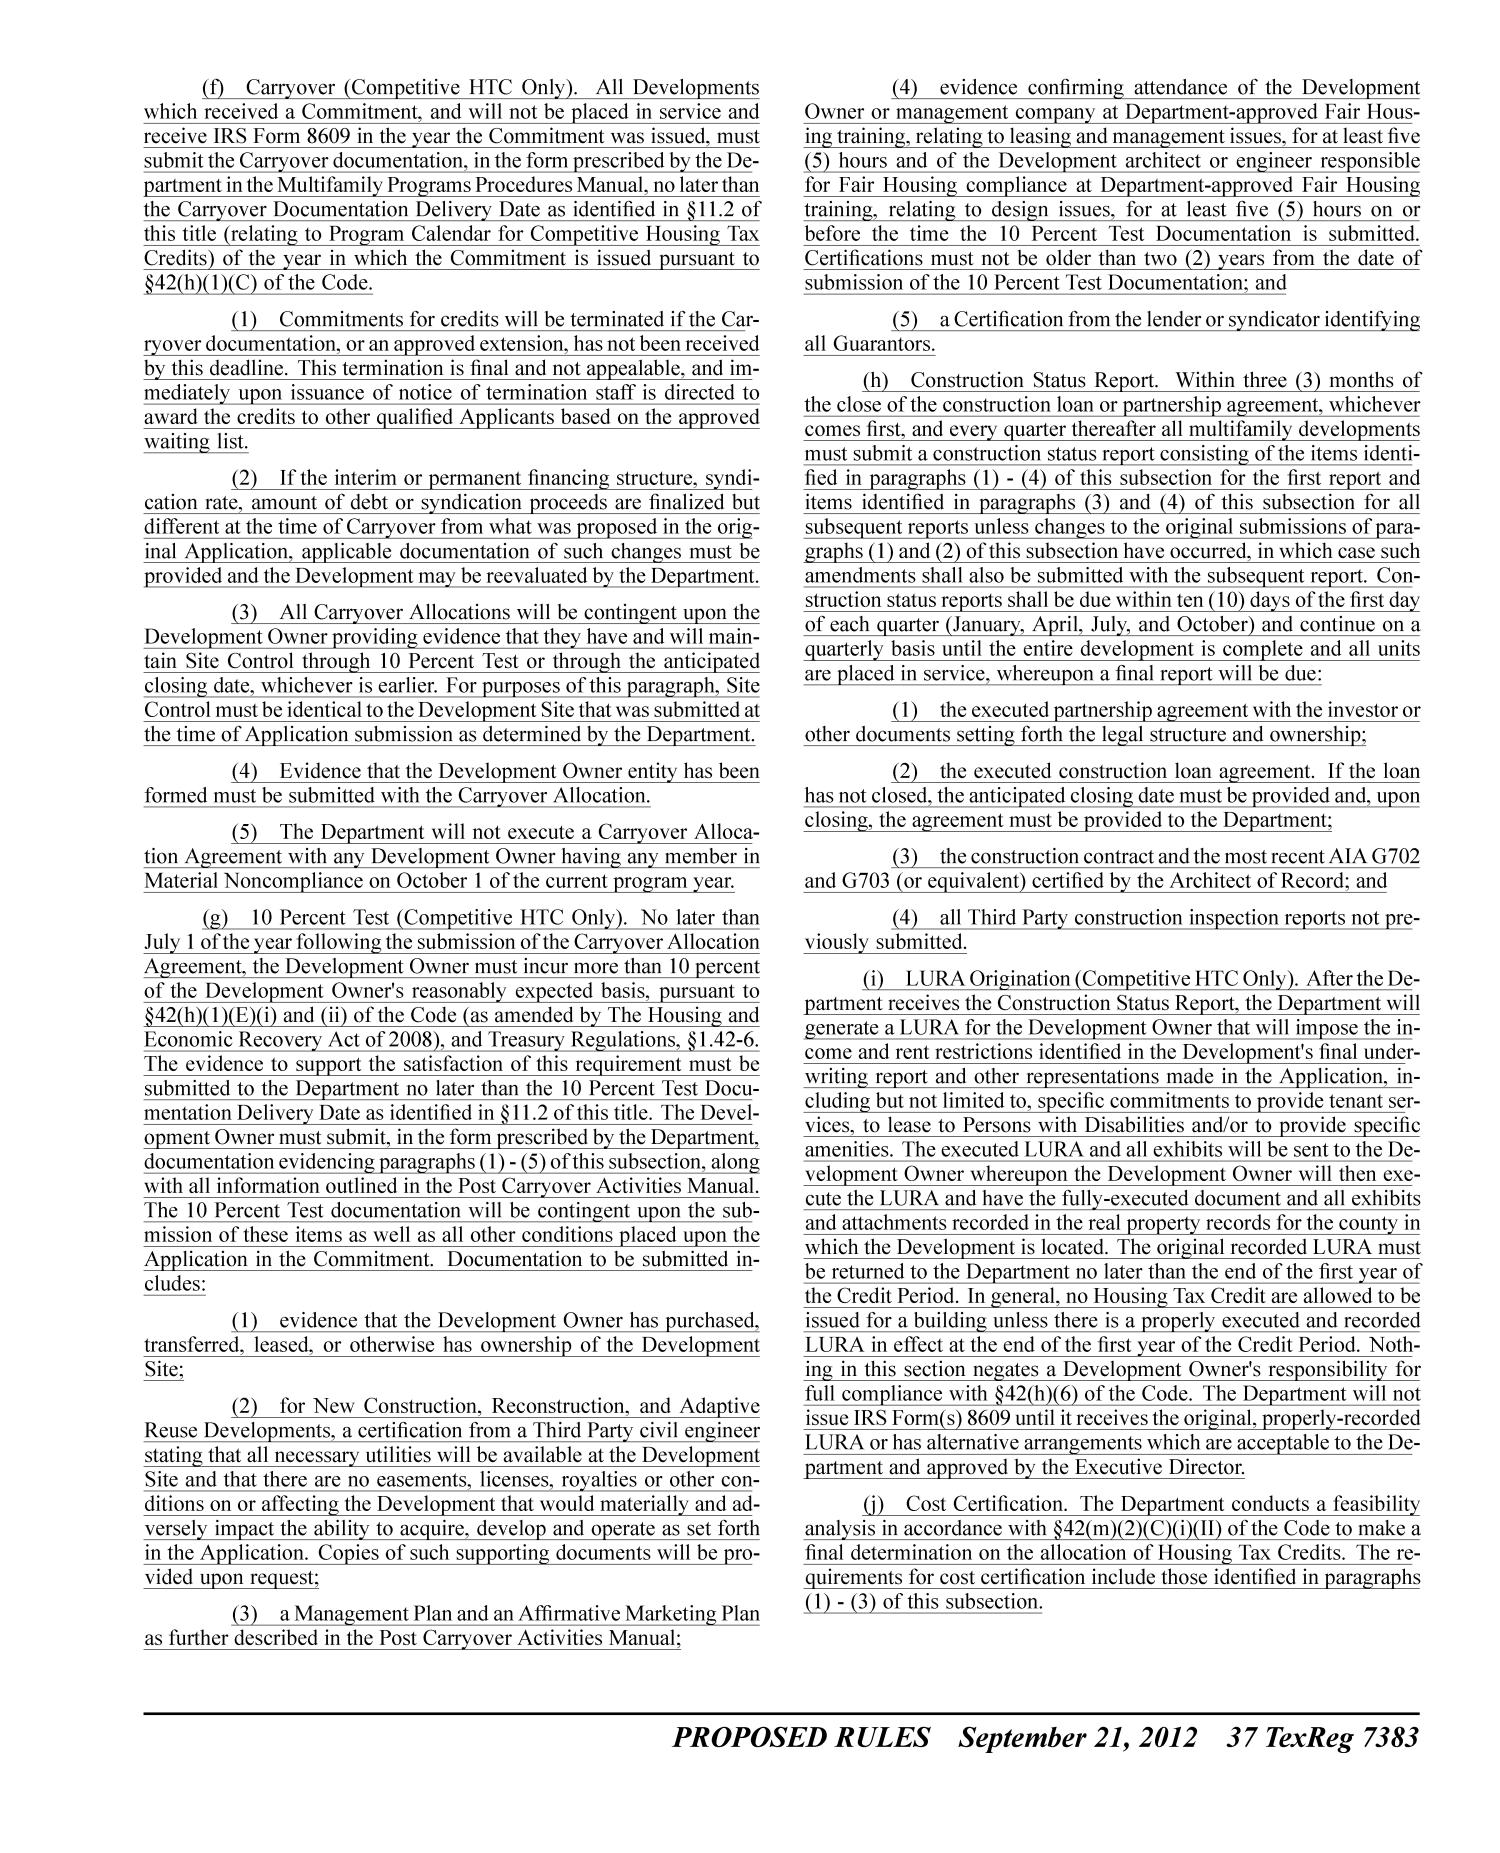 Texas Register, Volume 37, Number 38, Pages 7327-7532, September 21, 2012
                                                
                                                    7383
                                                